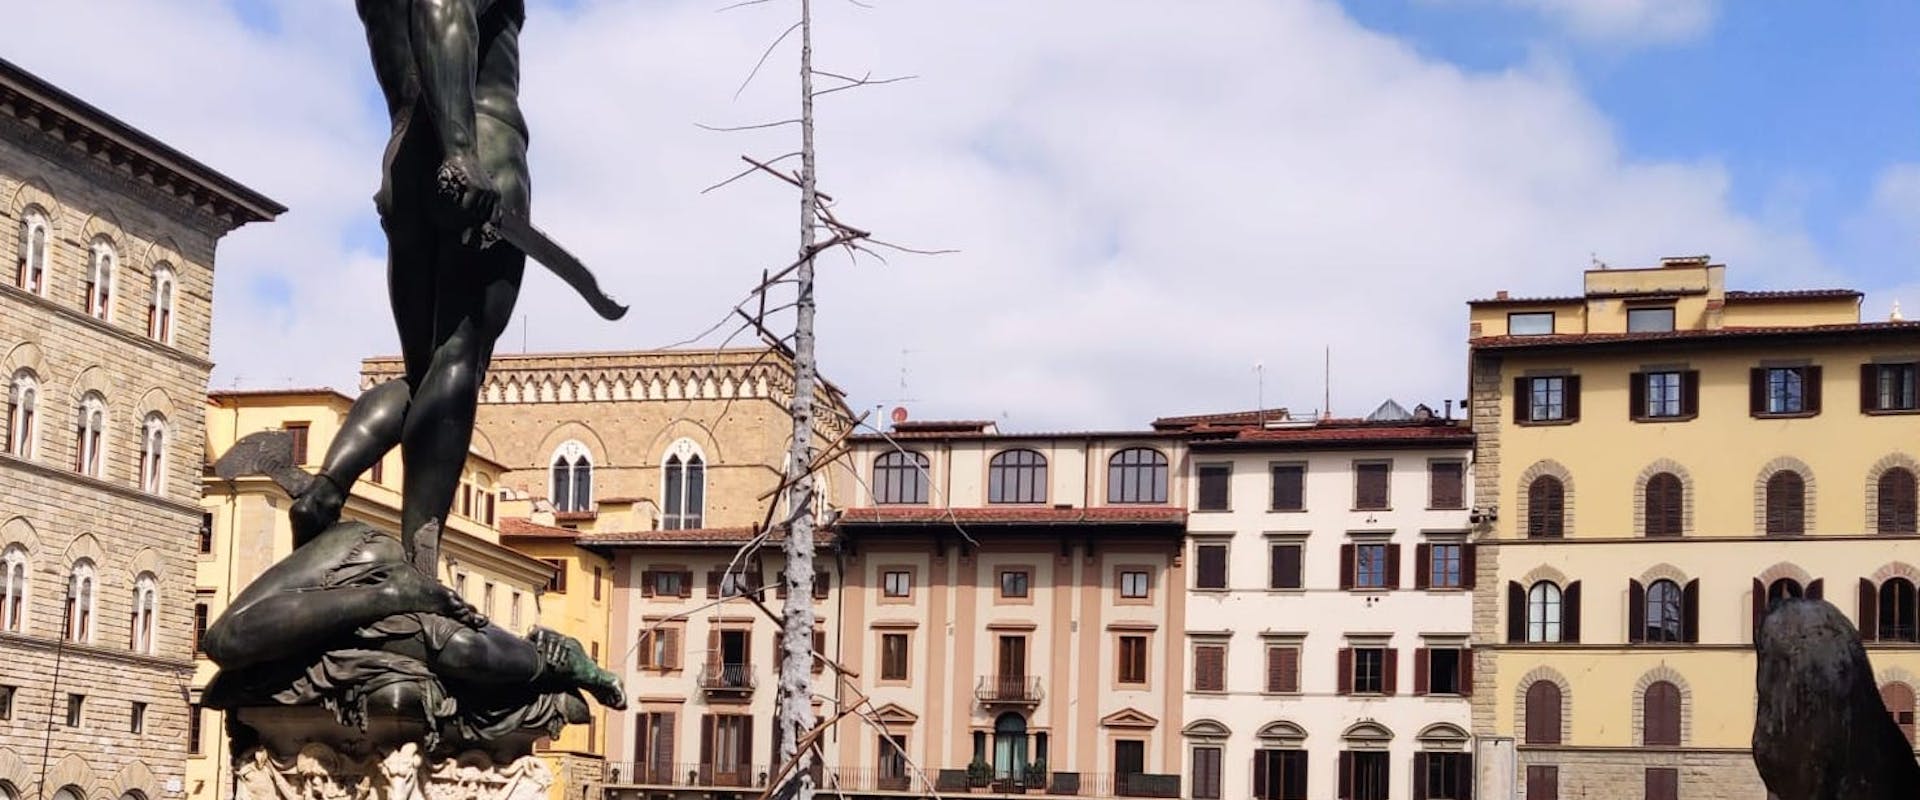 Dantedì: In Piazza Signoria sorge un albero del "Paradiso" di Giuseppe Penone